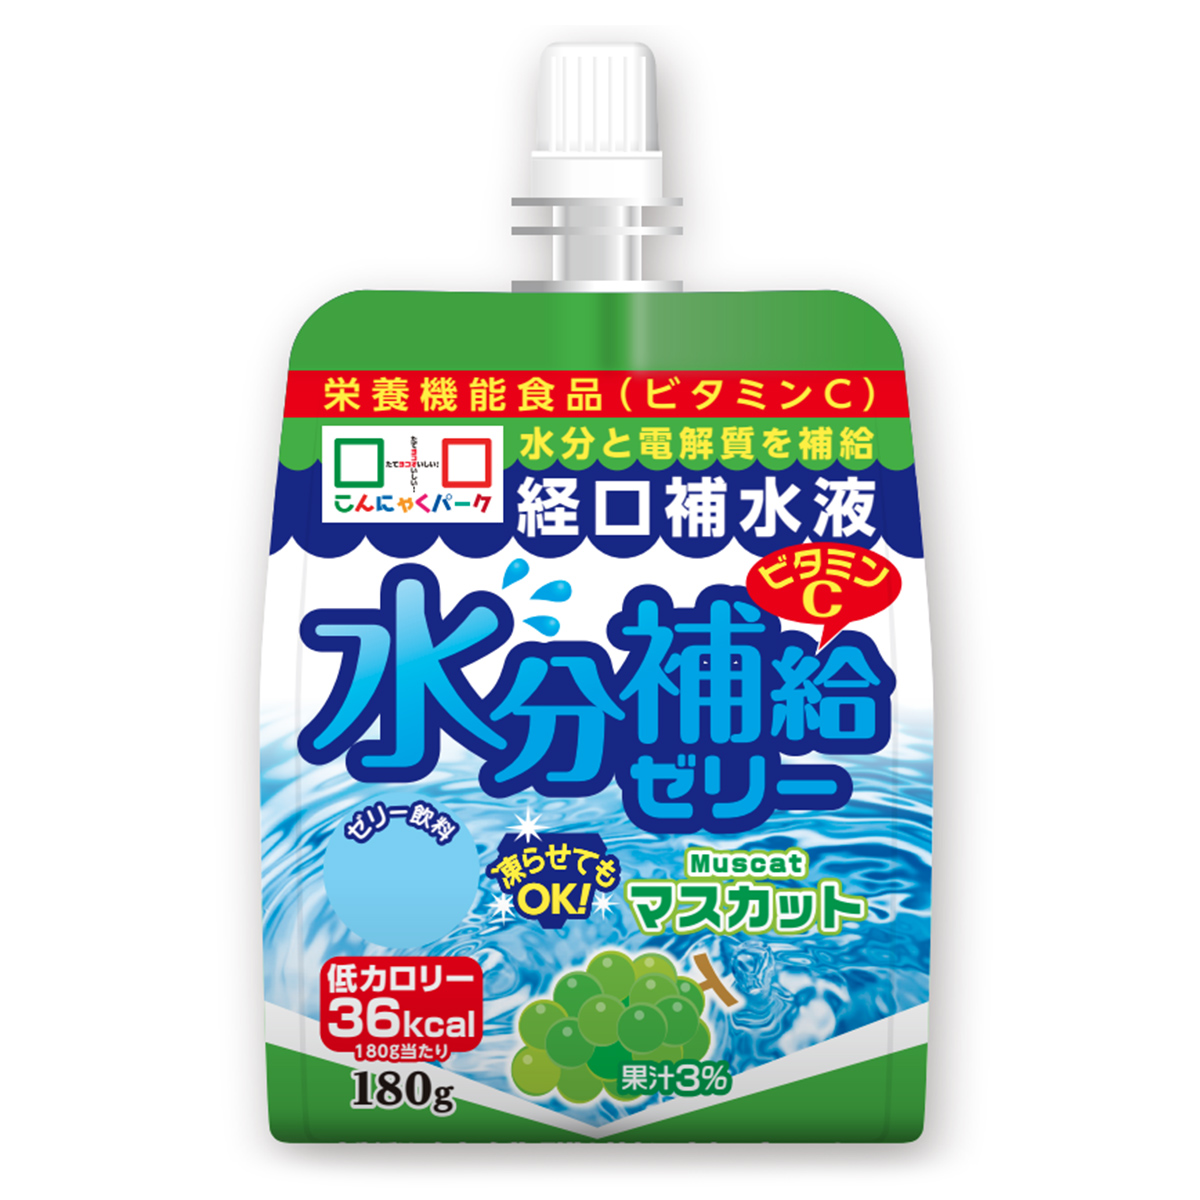 経口補水液こんにゃくドリンクゼリー果汁3％マスカット味300g×6個